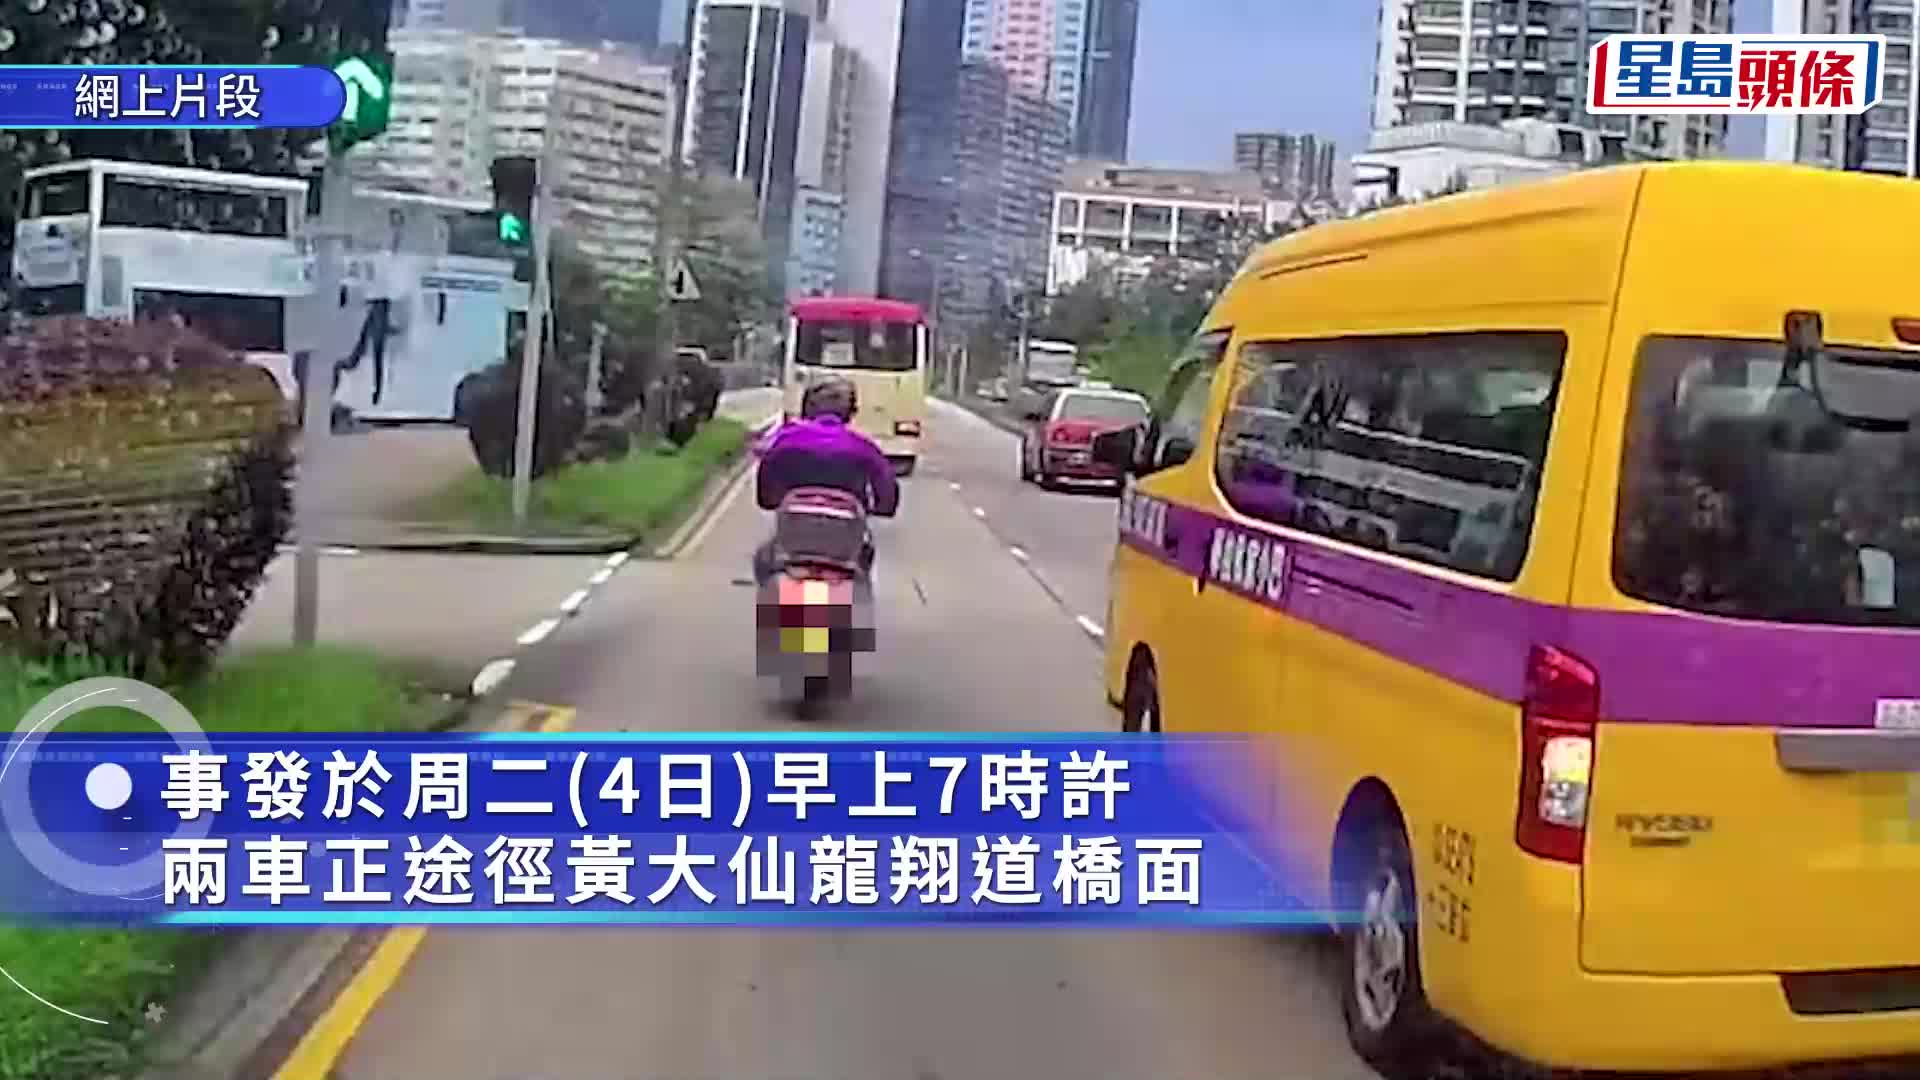 黃大仙保姆車夾硬切線 鐵騎士遭撞險釀車禍 網民：唔死係幸運